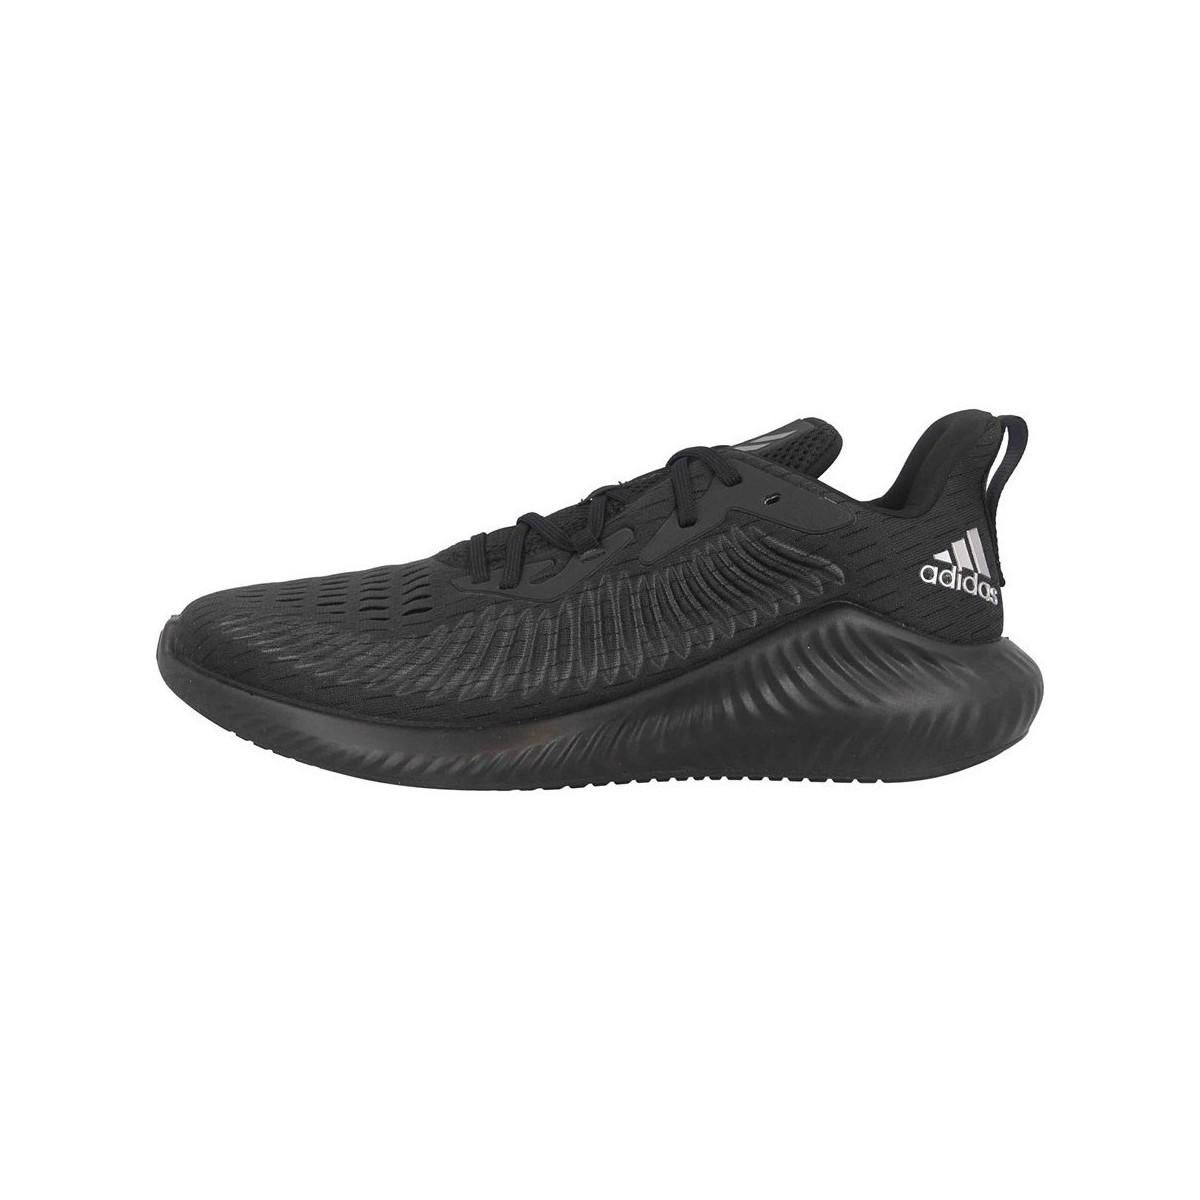 Chaussures Alphabounce adidas pour homme en coloris Noir - Lyst